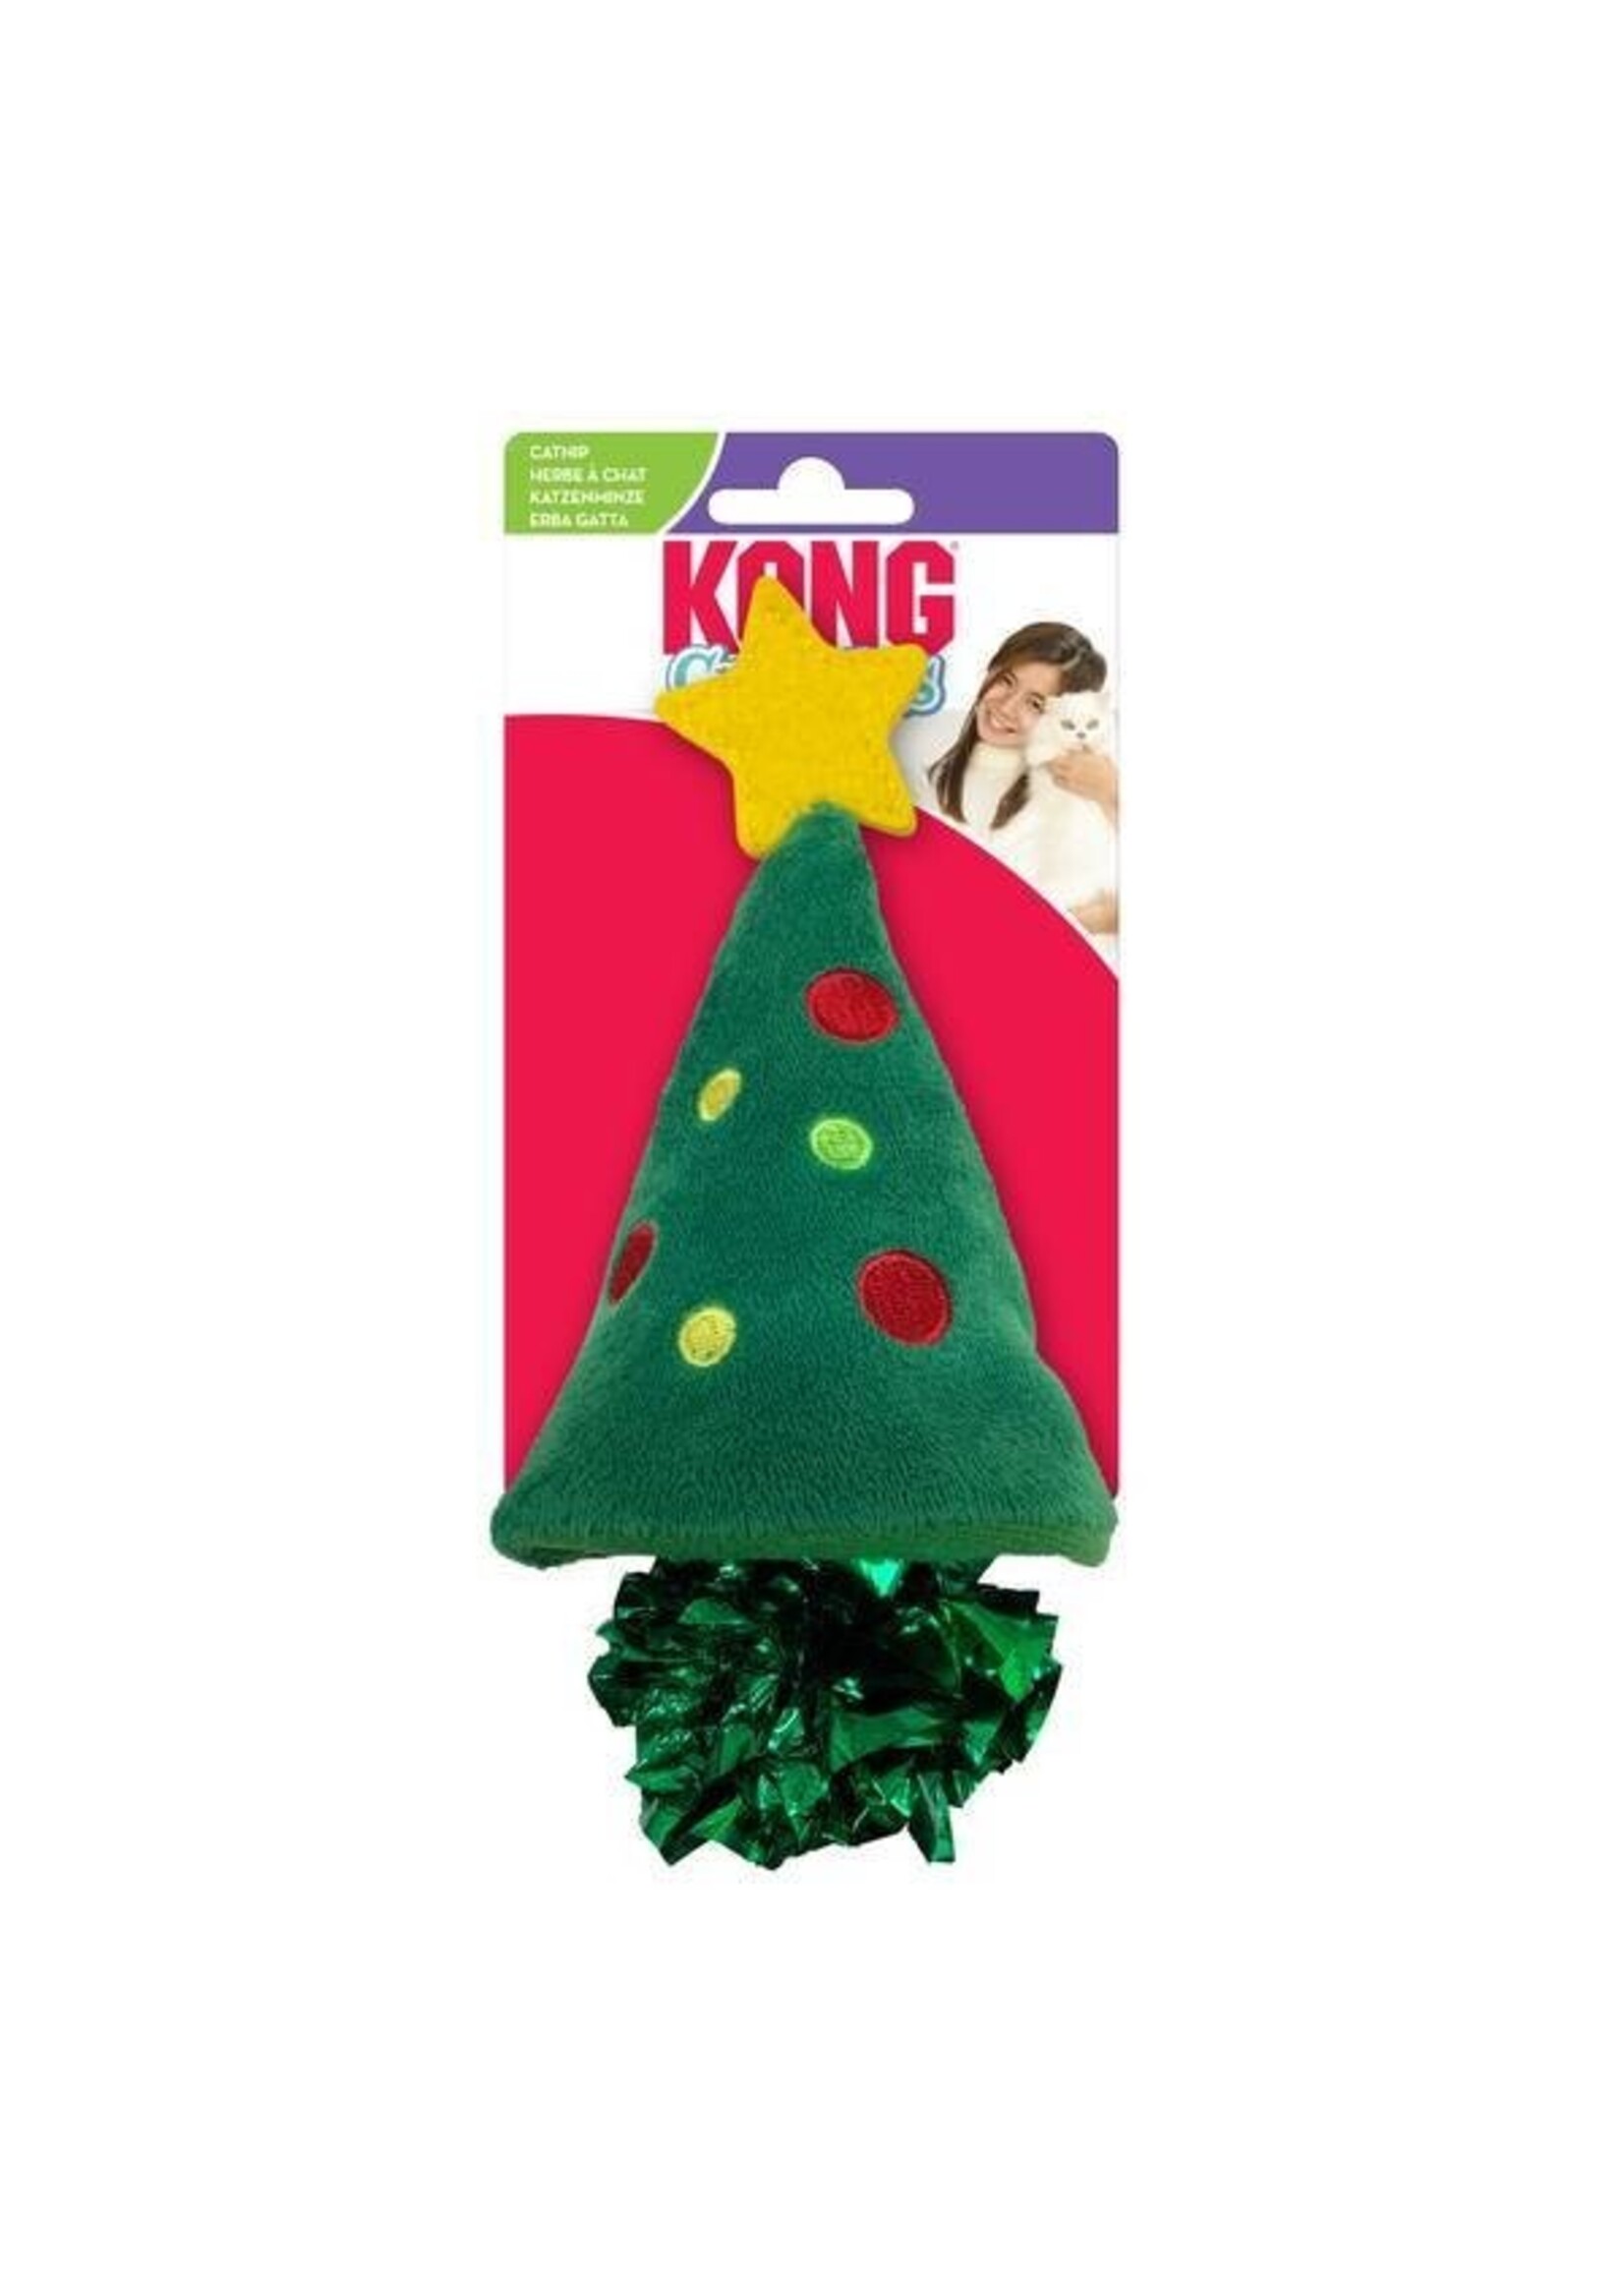 Kong Kong Holiday Crackles Christmas Tree